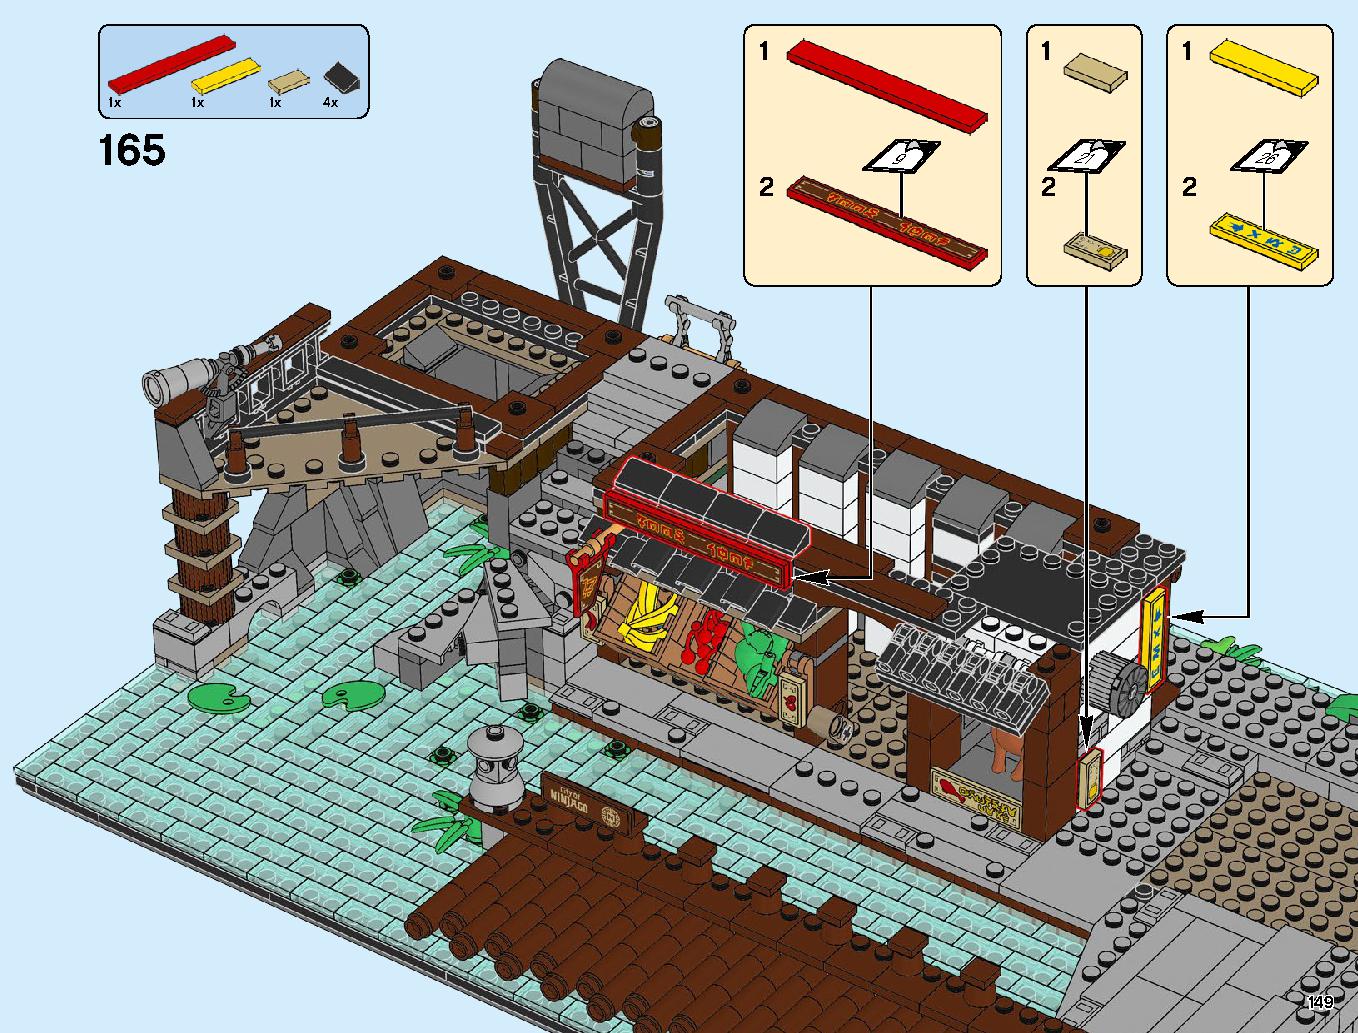 ニンジャゴーシティ・ポートパーク 70657 レゴの商品情報 レゴの説明書・組立方法 149 page